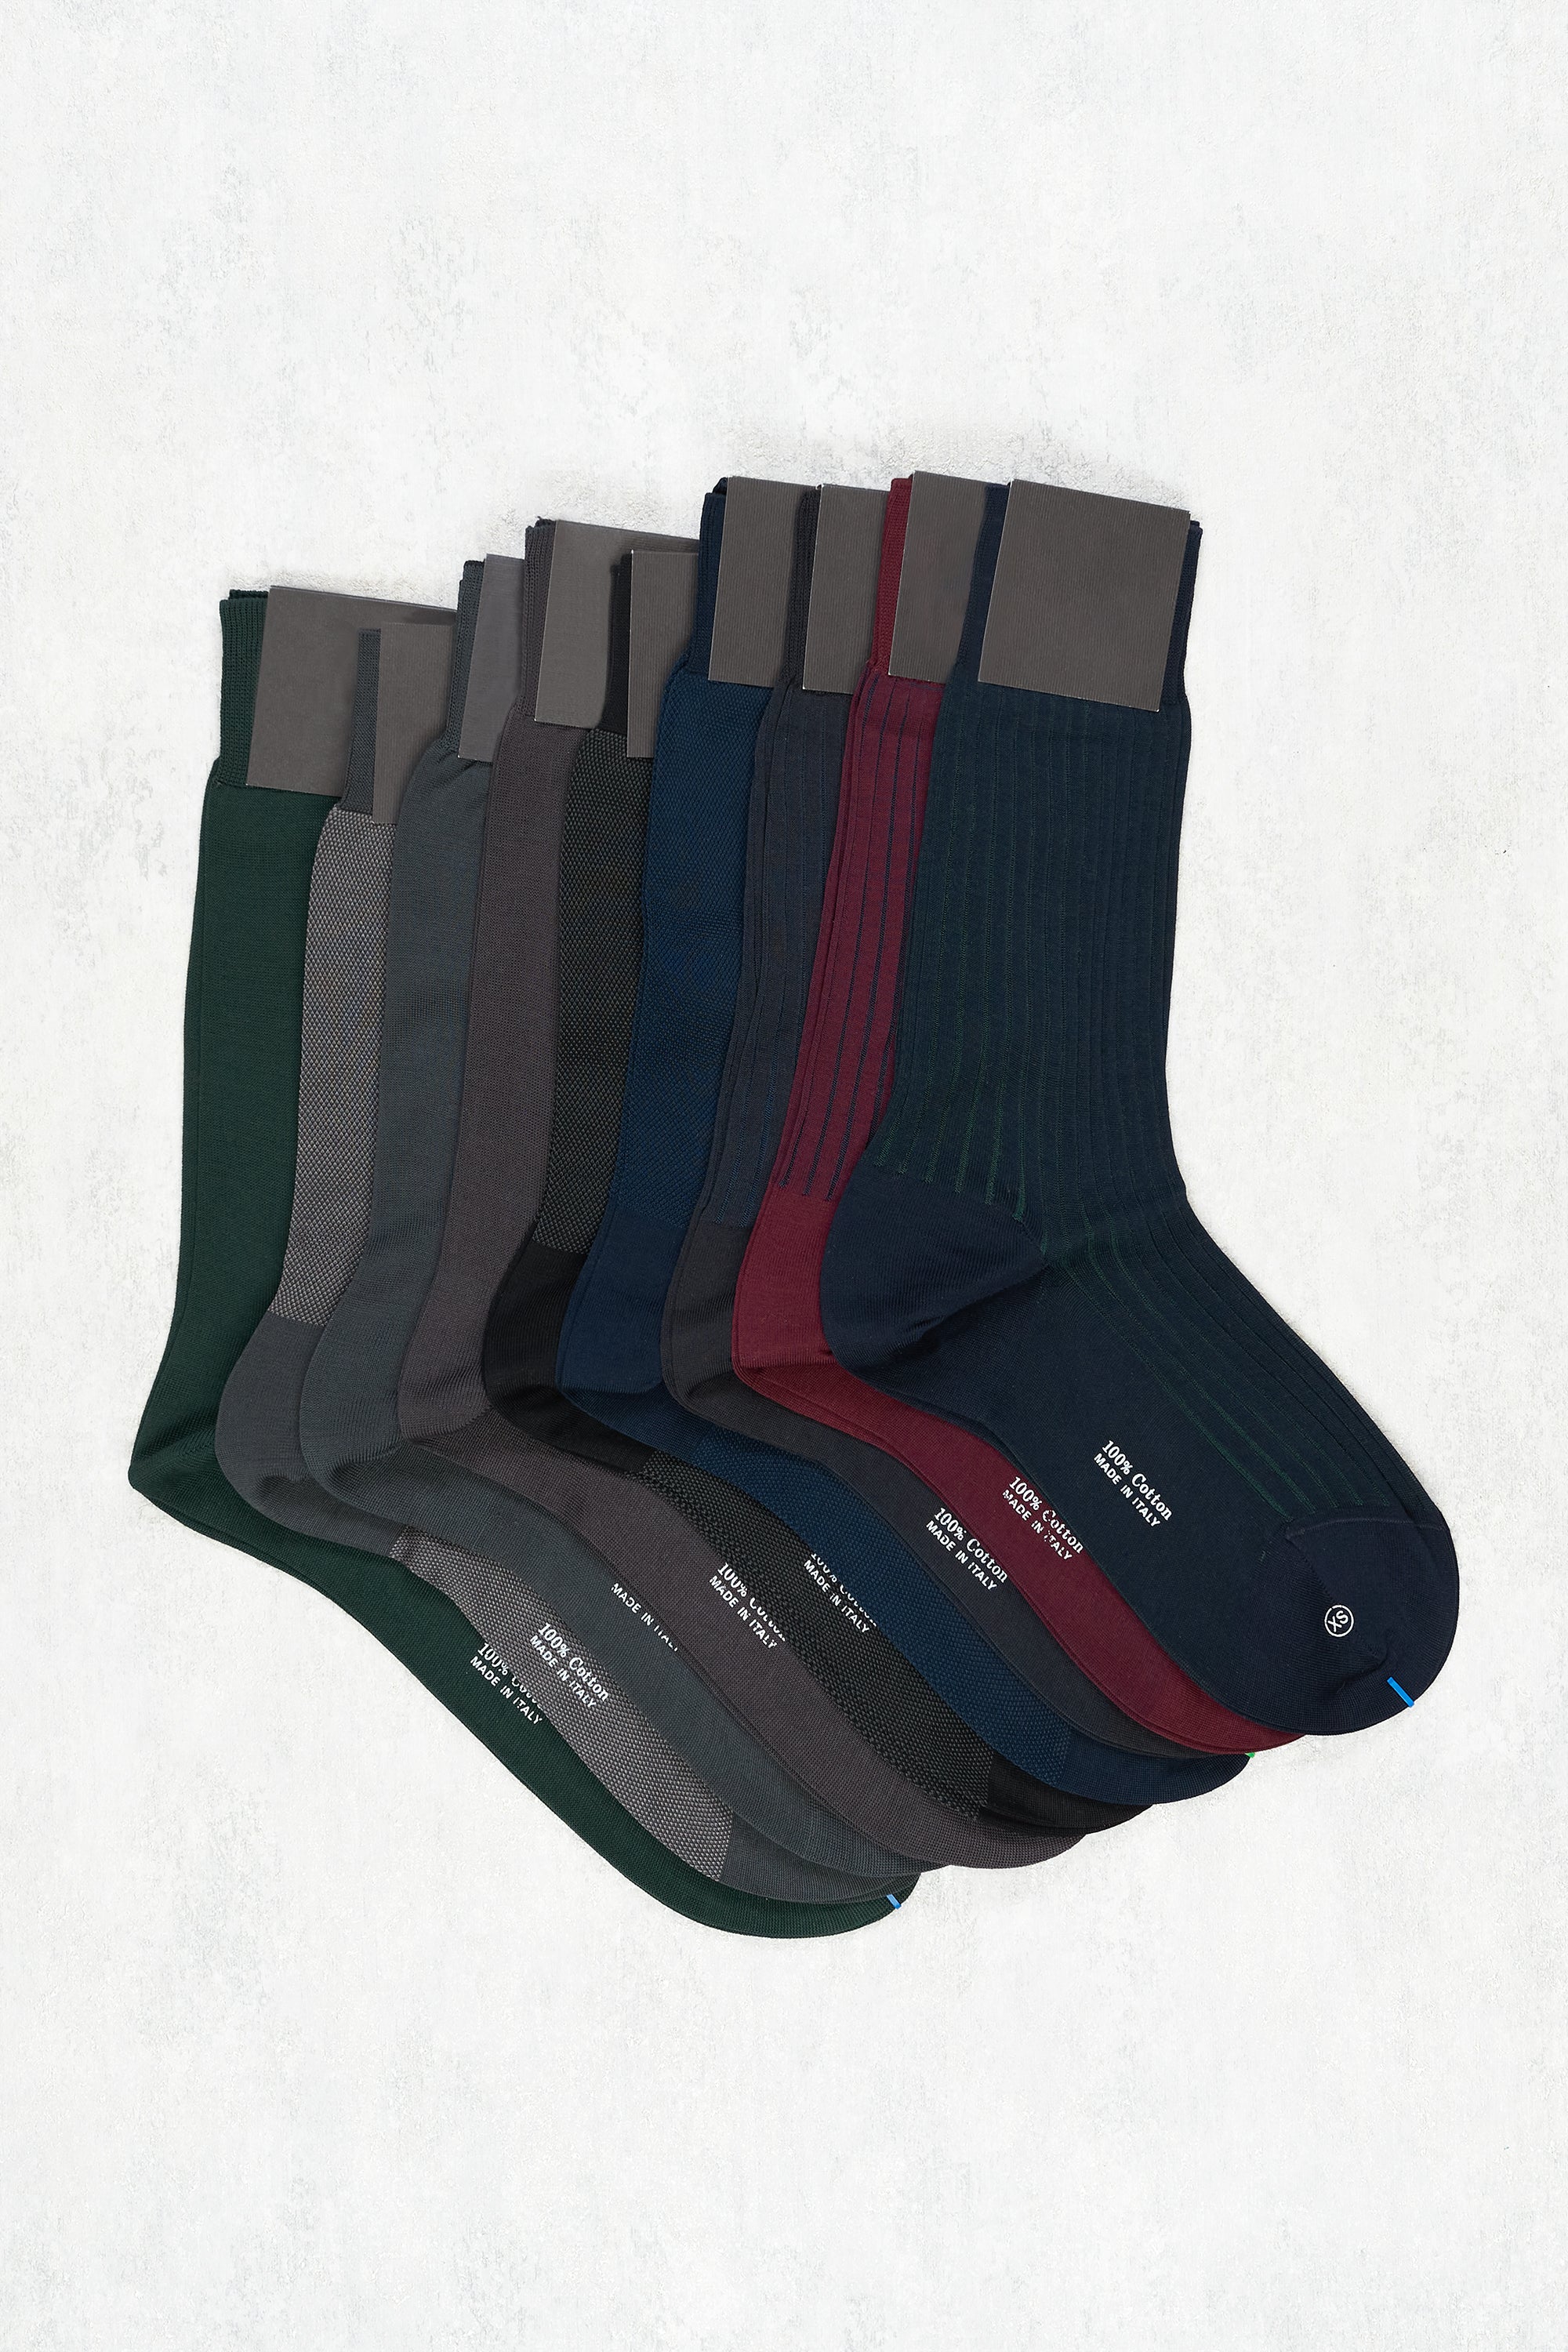 Sorley Short Socks 6 Pack Bundle